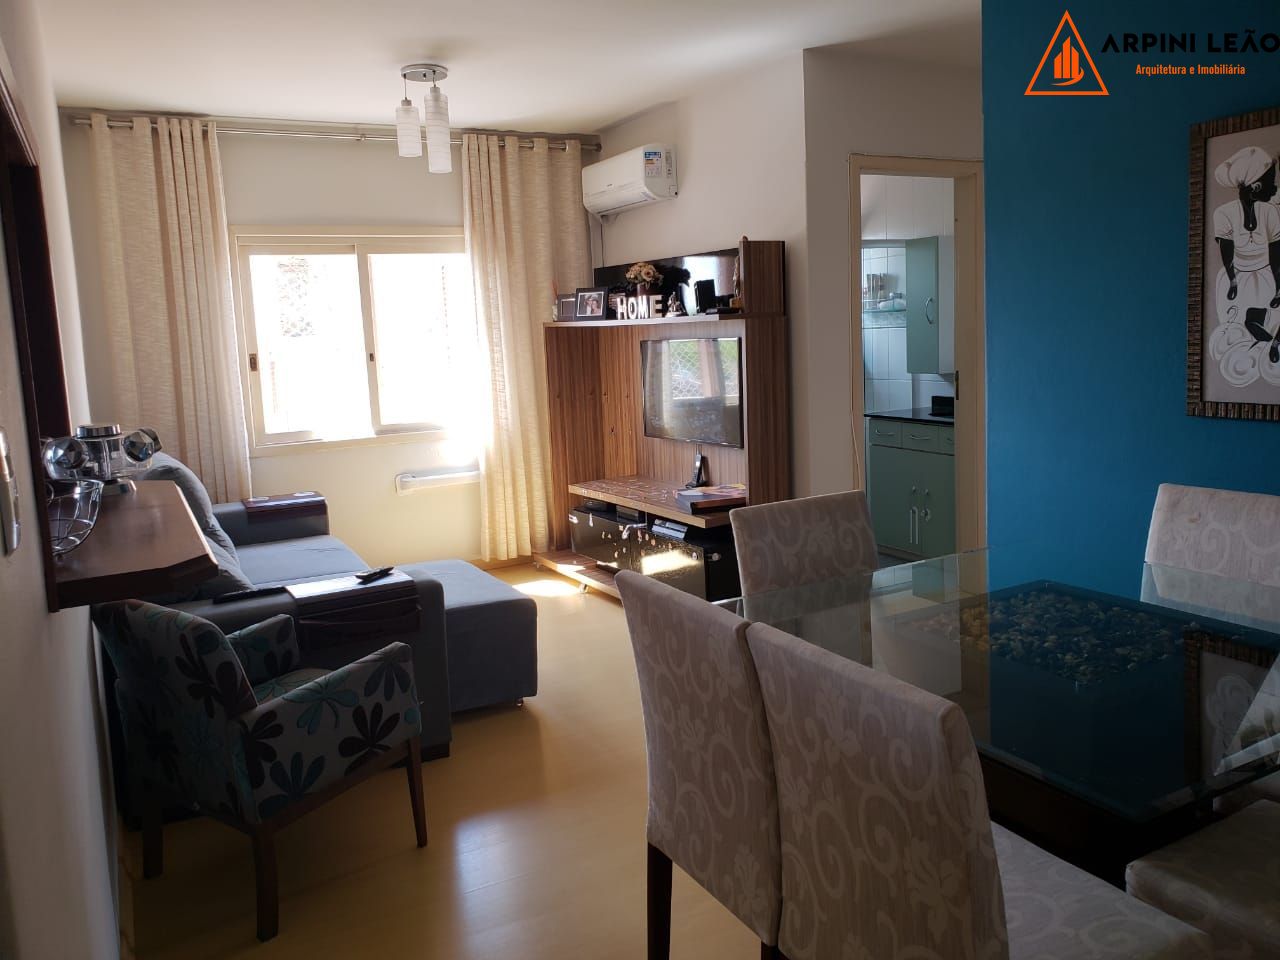 Apartamento com 2 Dormitórios à venda, 70 m² por R$ 215.000,00